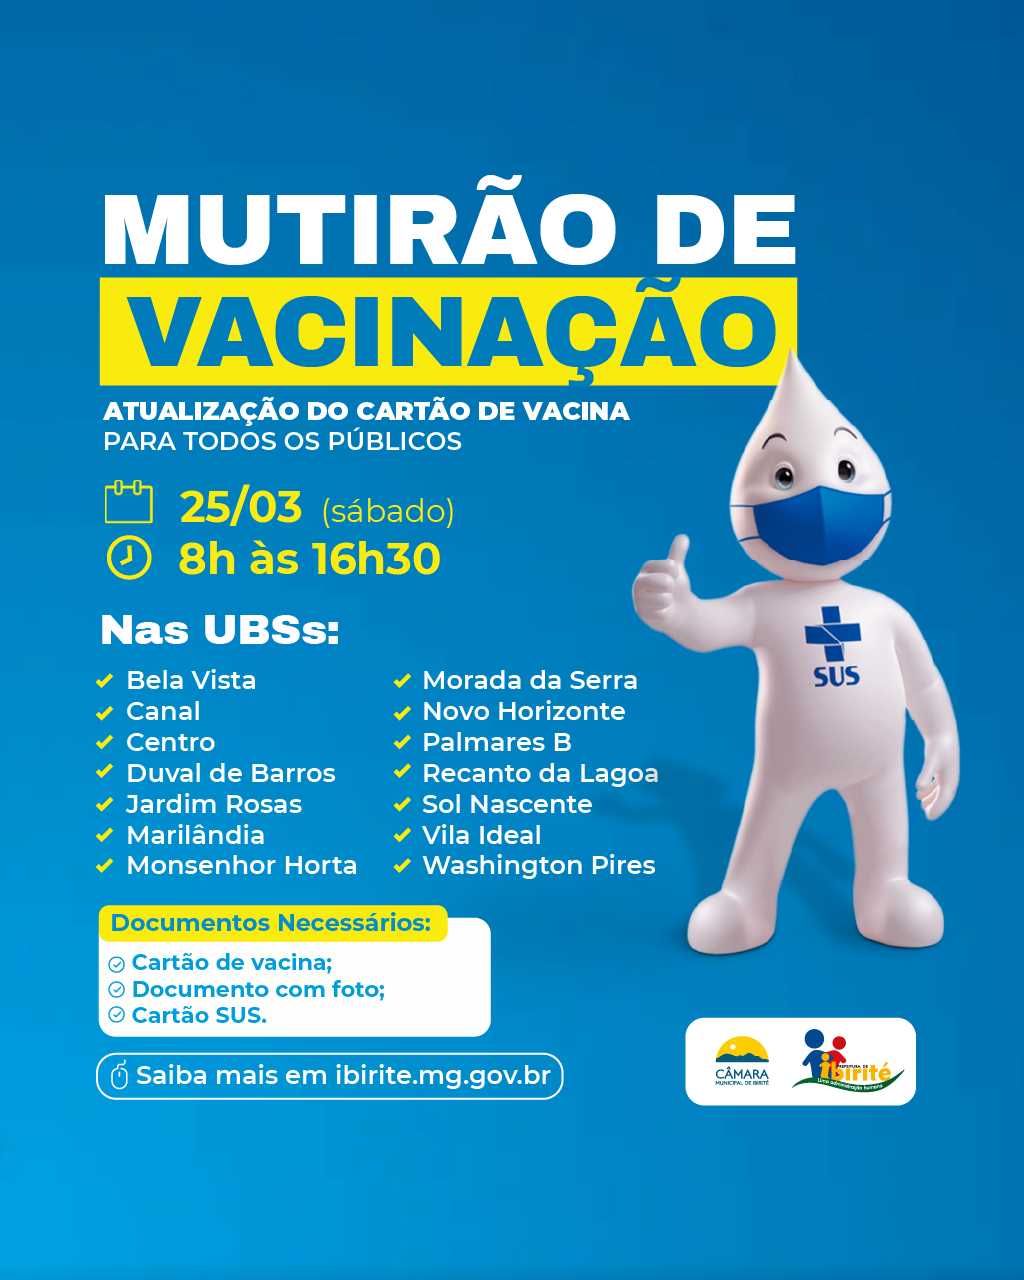 Prefeitura Municipal de Ibirité - Mutirão de Vacinação